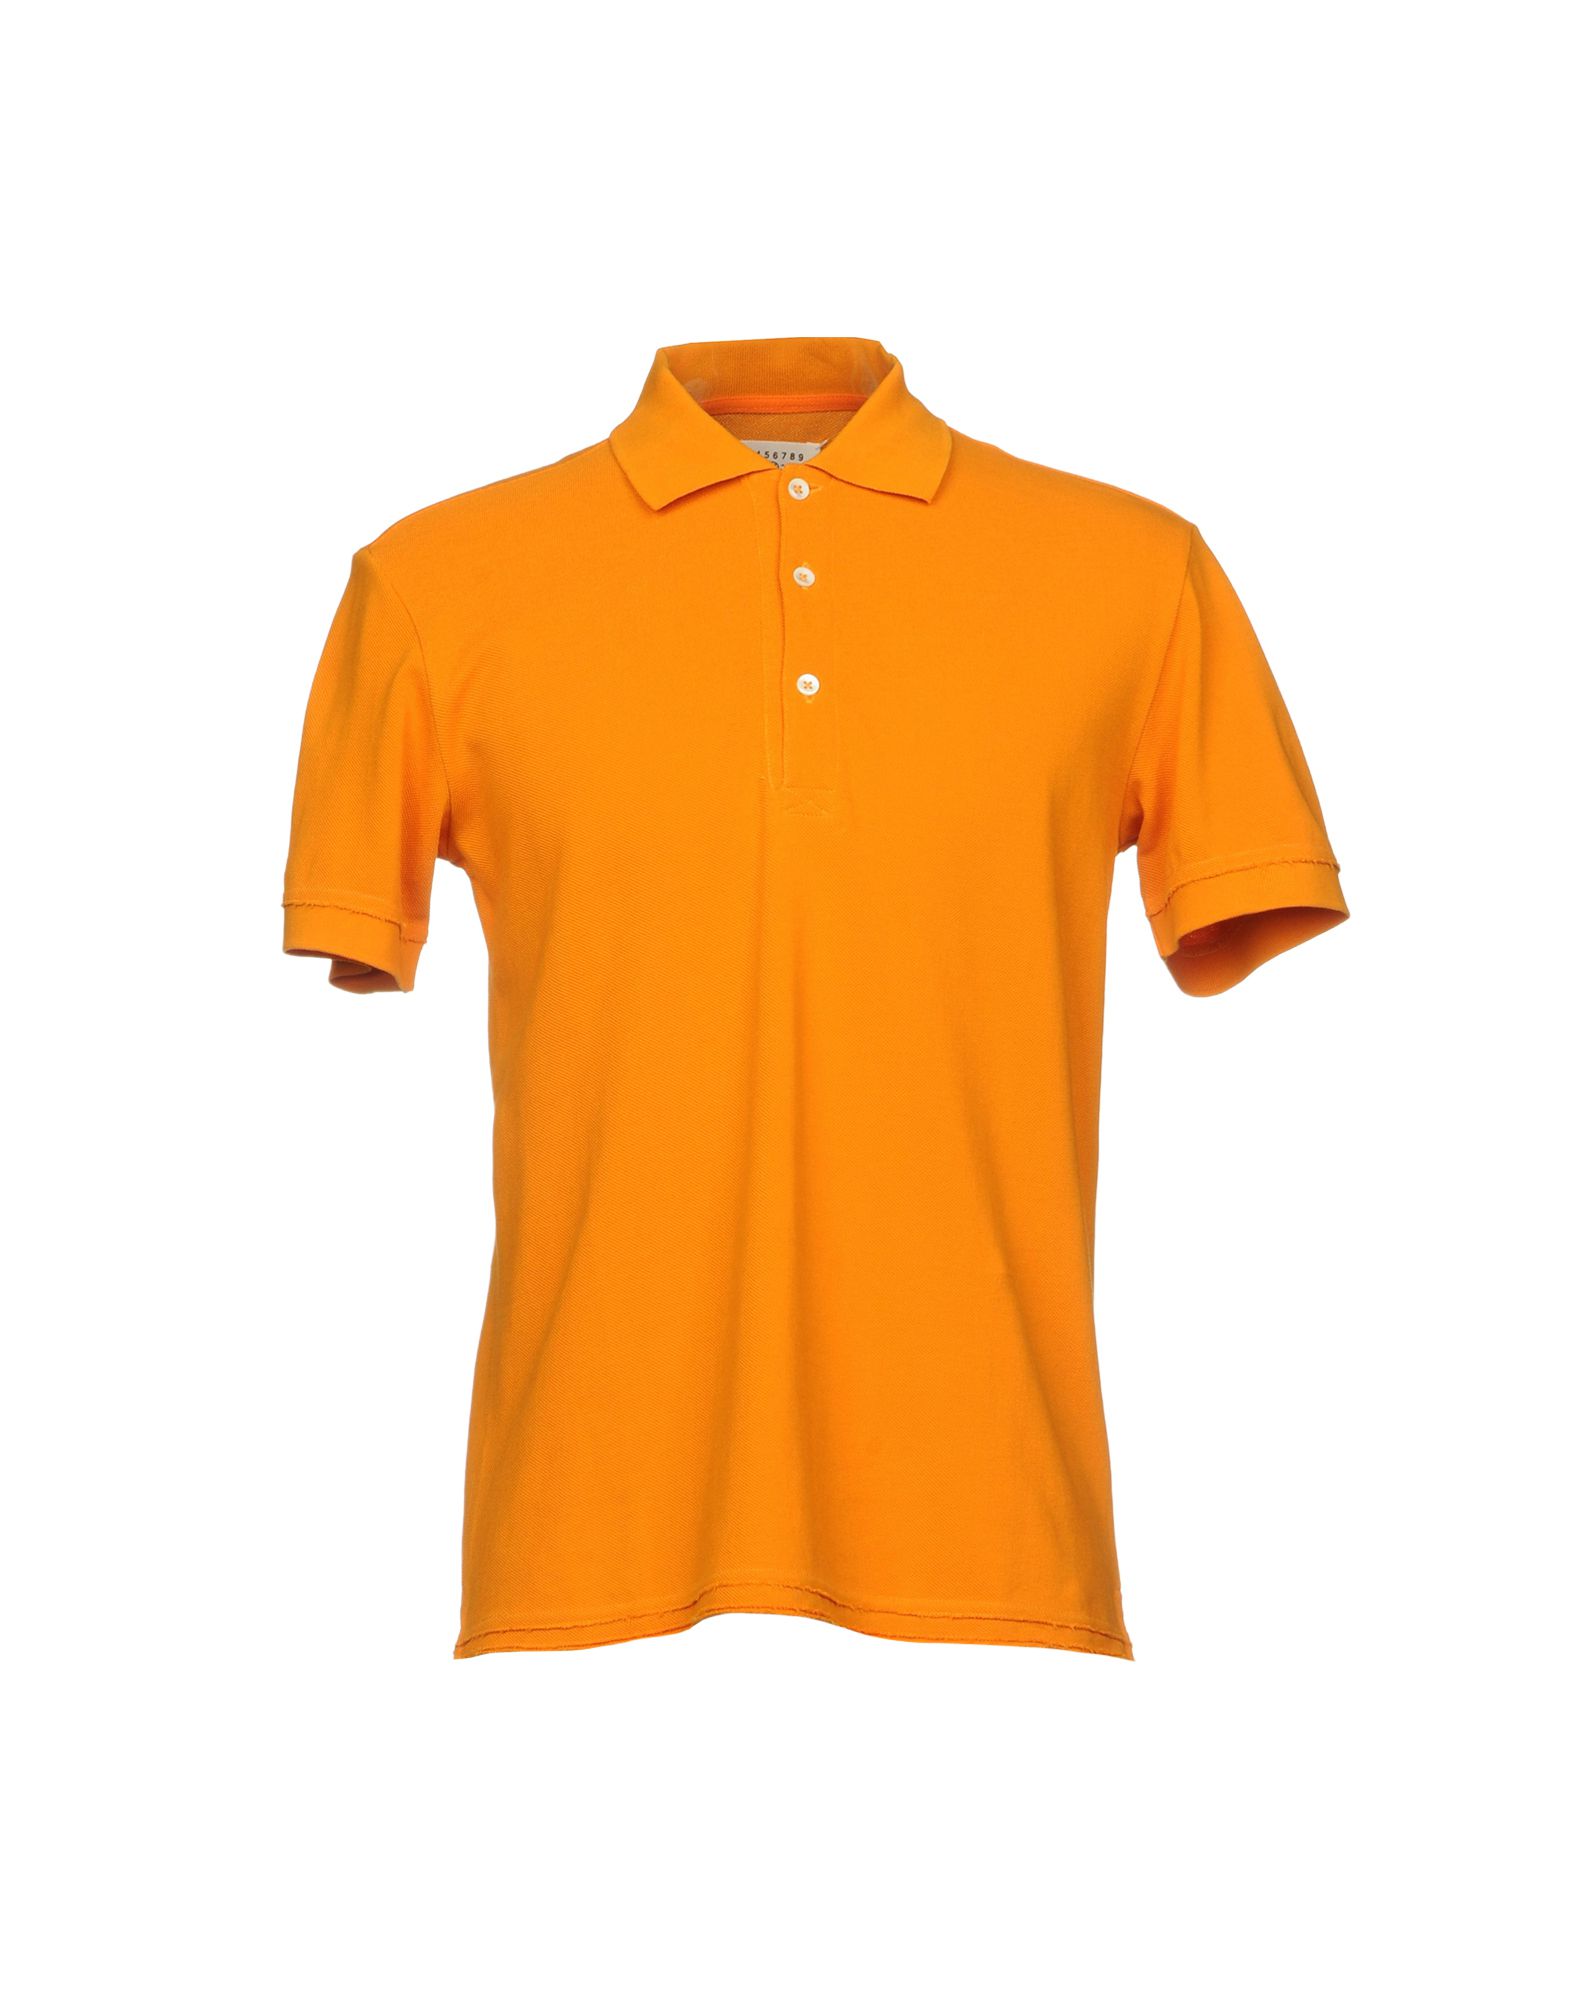 《送料無料》MAISON MARGIELA メンズ ポロシャツ オレンジ 46 コットン 100%